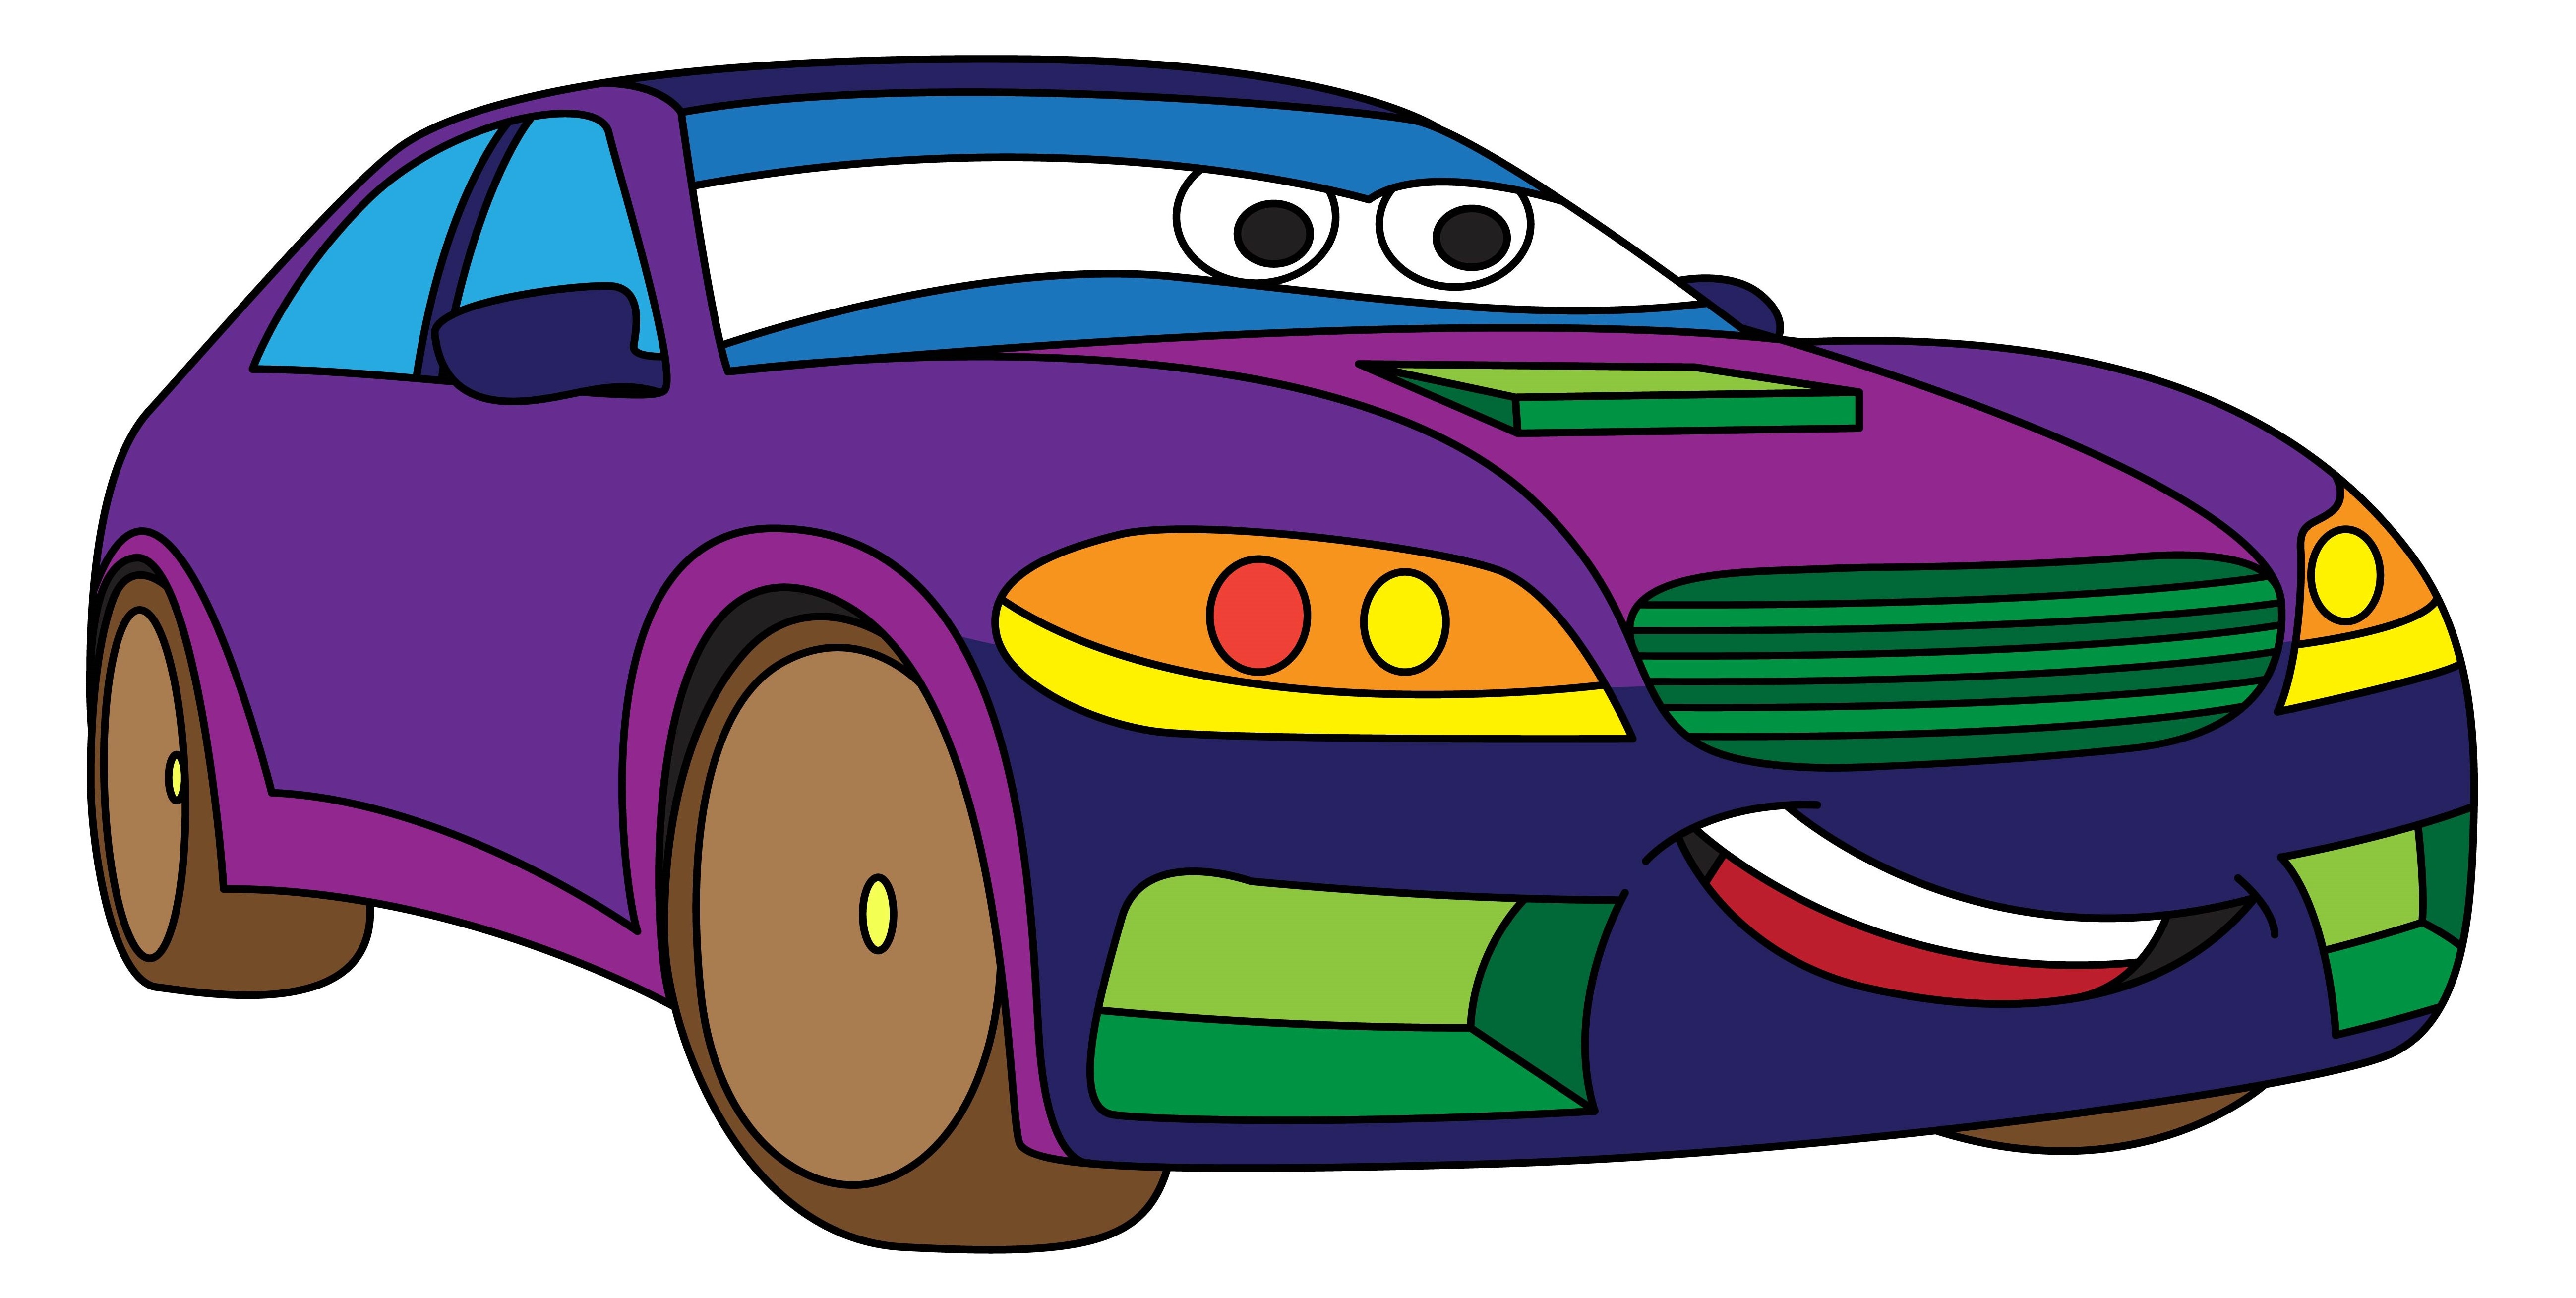 Раскраска улыбающаяся гоночная машинка с глазами формата А4 в высоком качестве